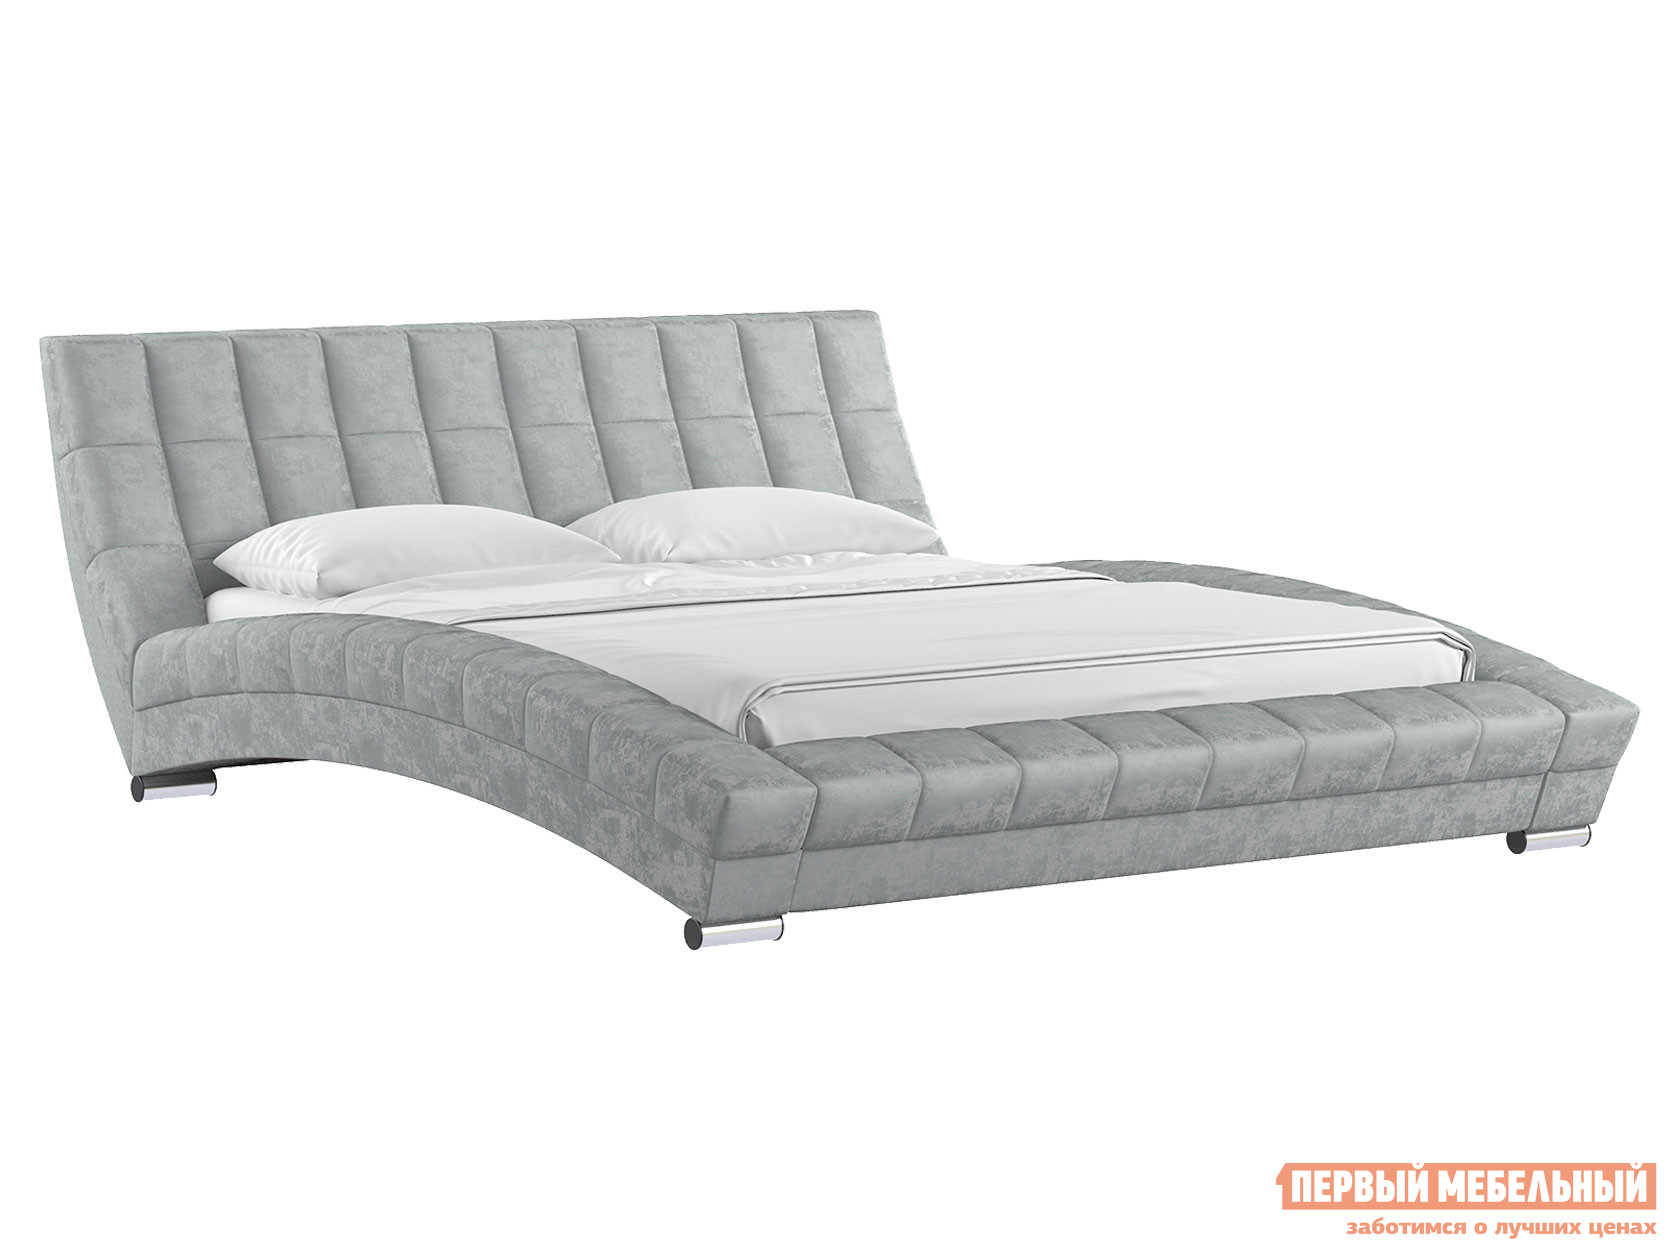 Двуспальная кровать  Оливия Люкс Светло-серый, велюр, 180х200 см